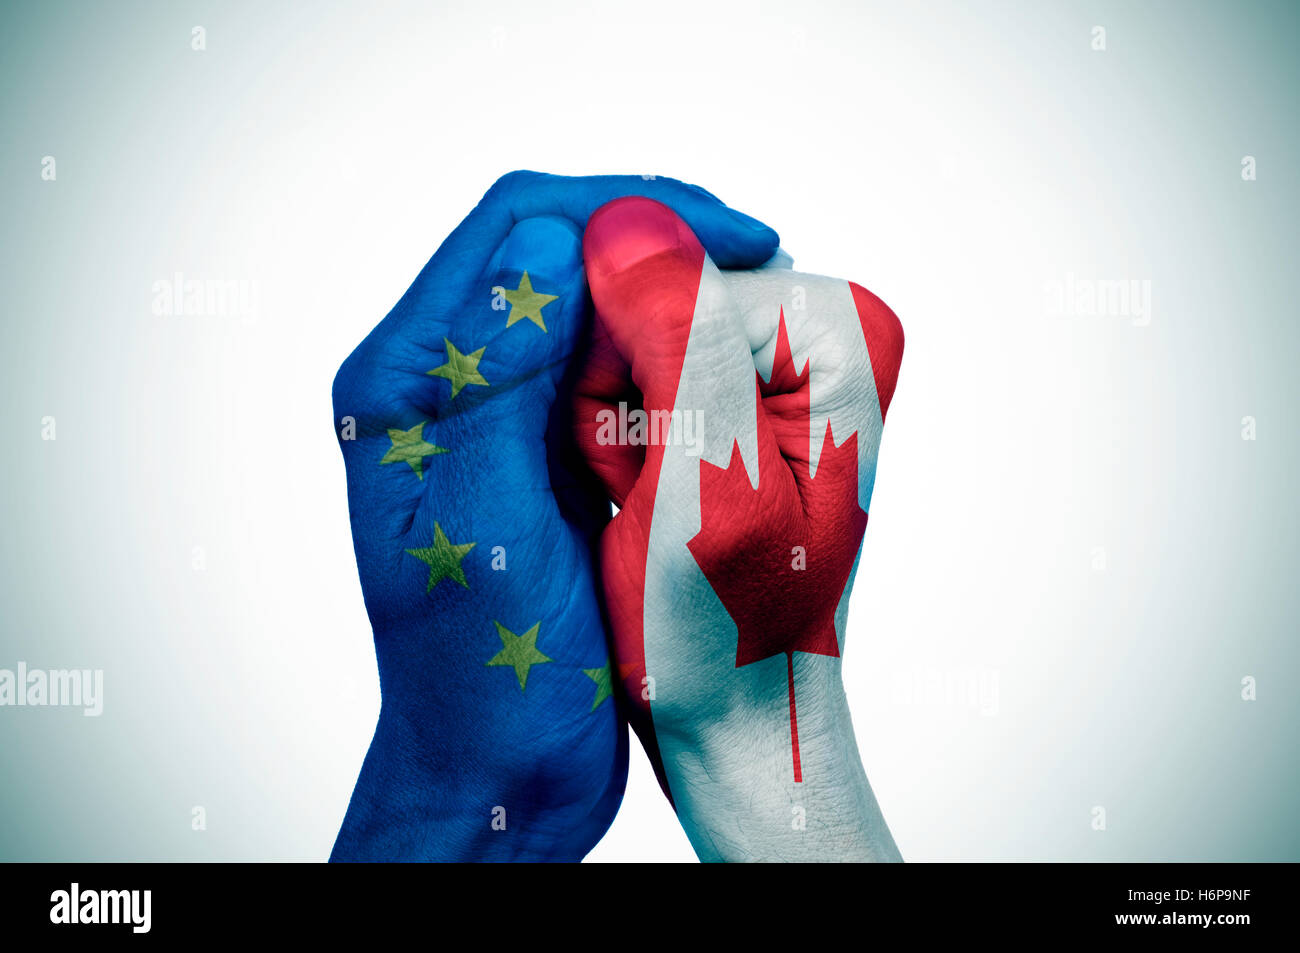 Une main, avec le drapeau de la Communauté européenne couvre une autre main à motifs de pavillon du Canada Banque D'Images